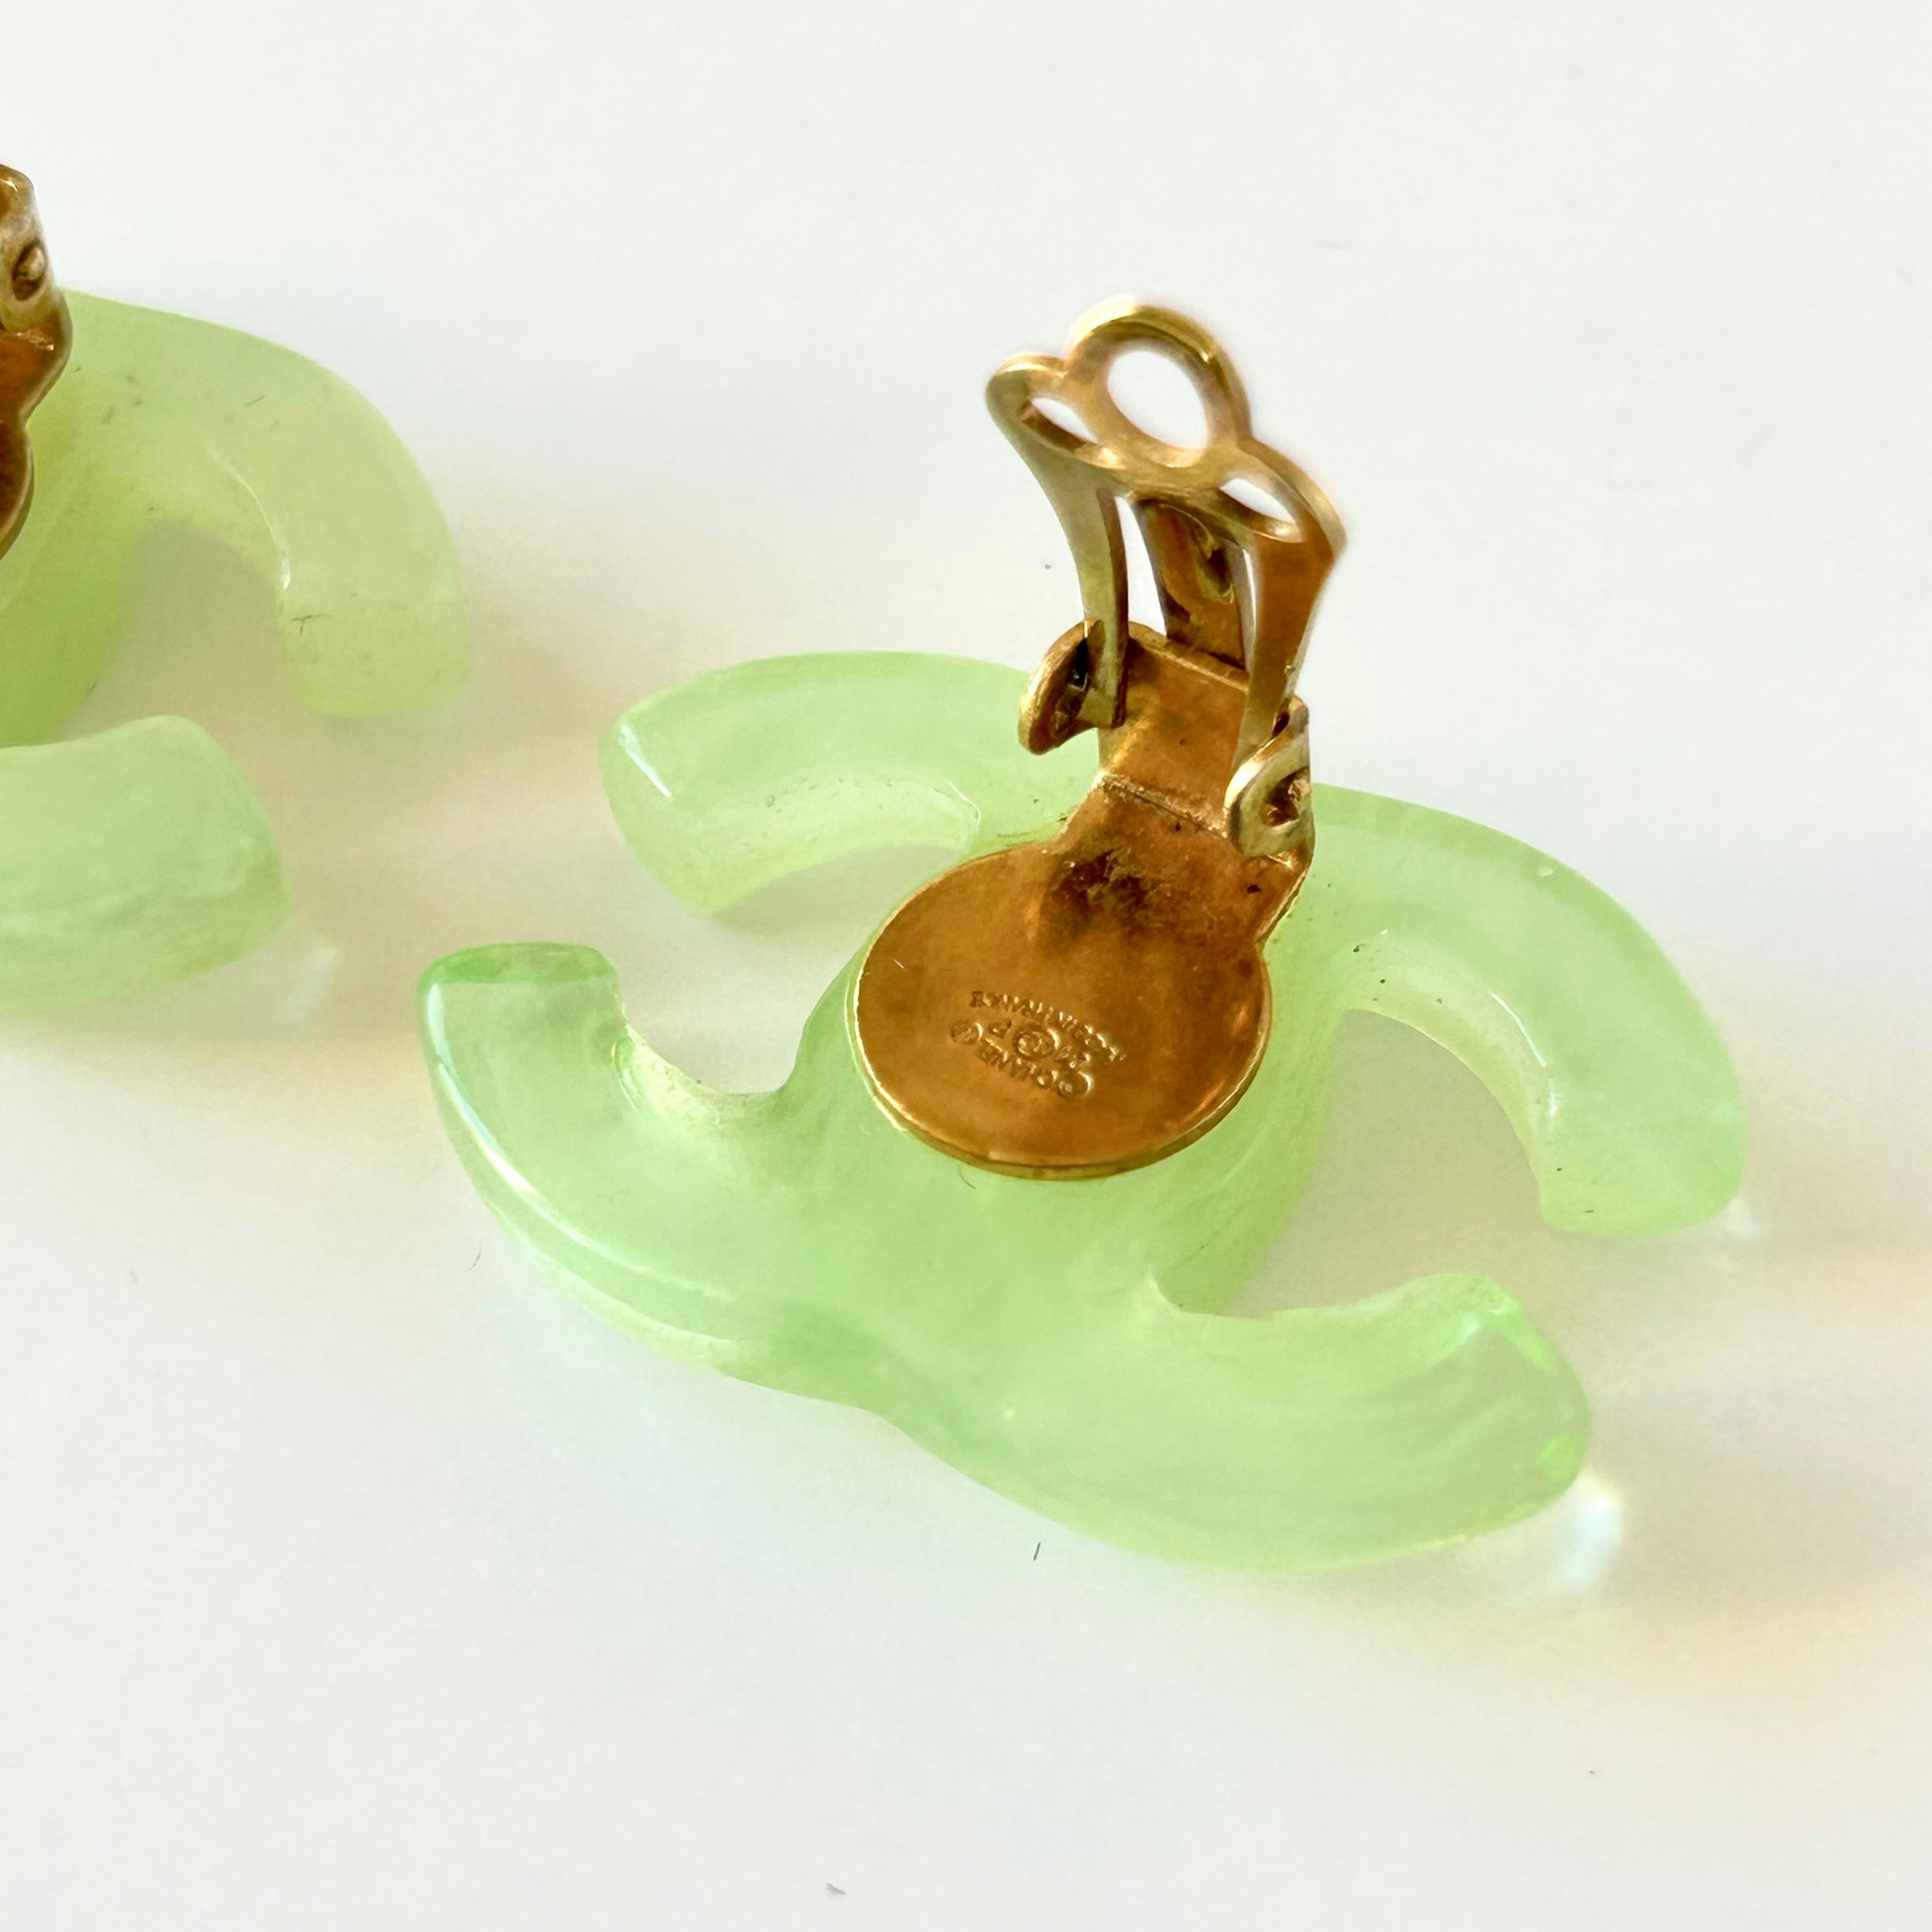 chanel earrings jewelry green